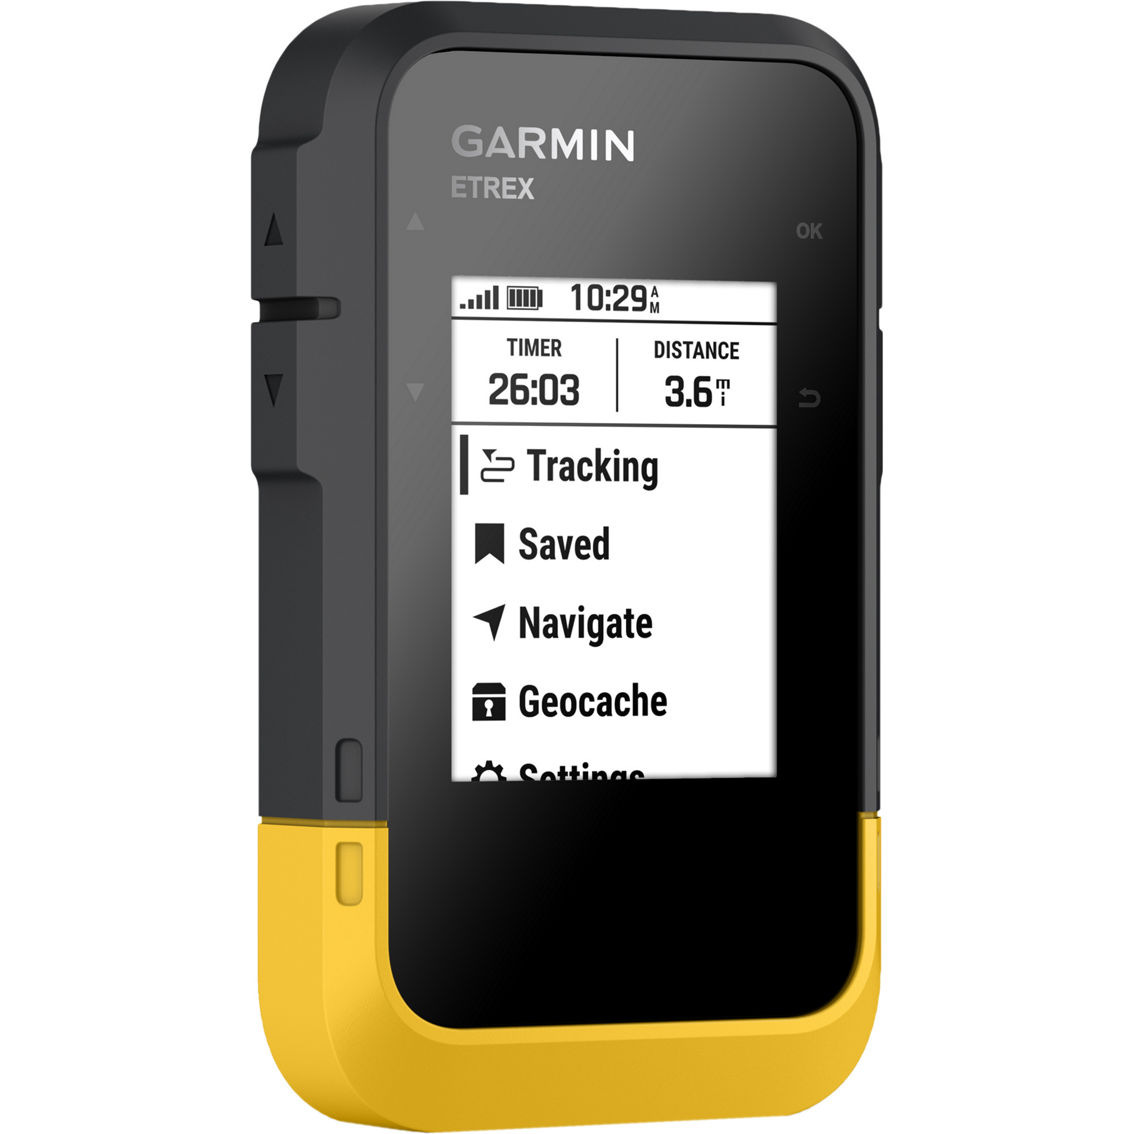 Garmin ETrex SE GPS Handheld Navigator - Image 5 of 8